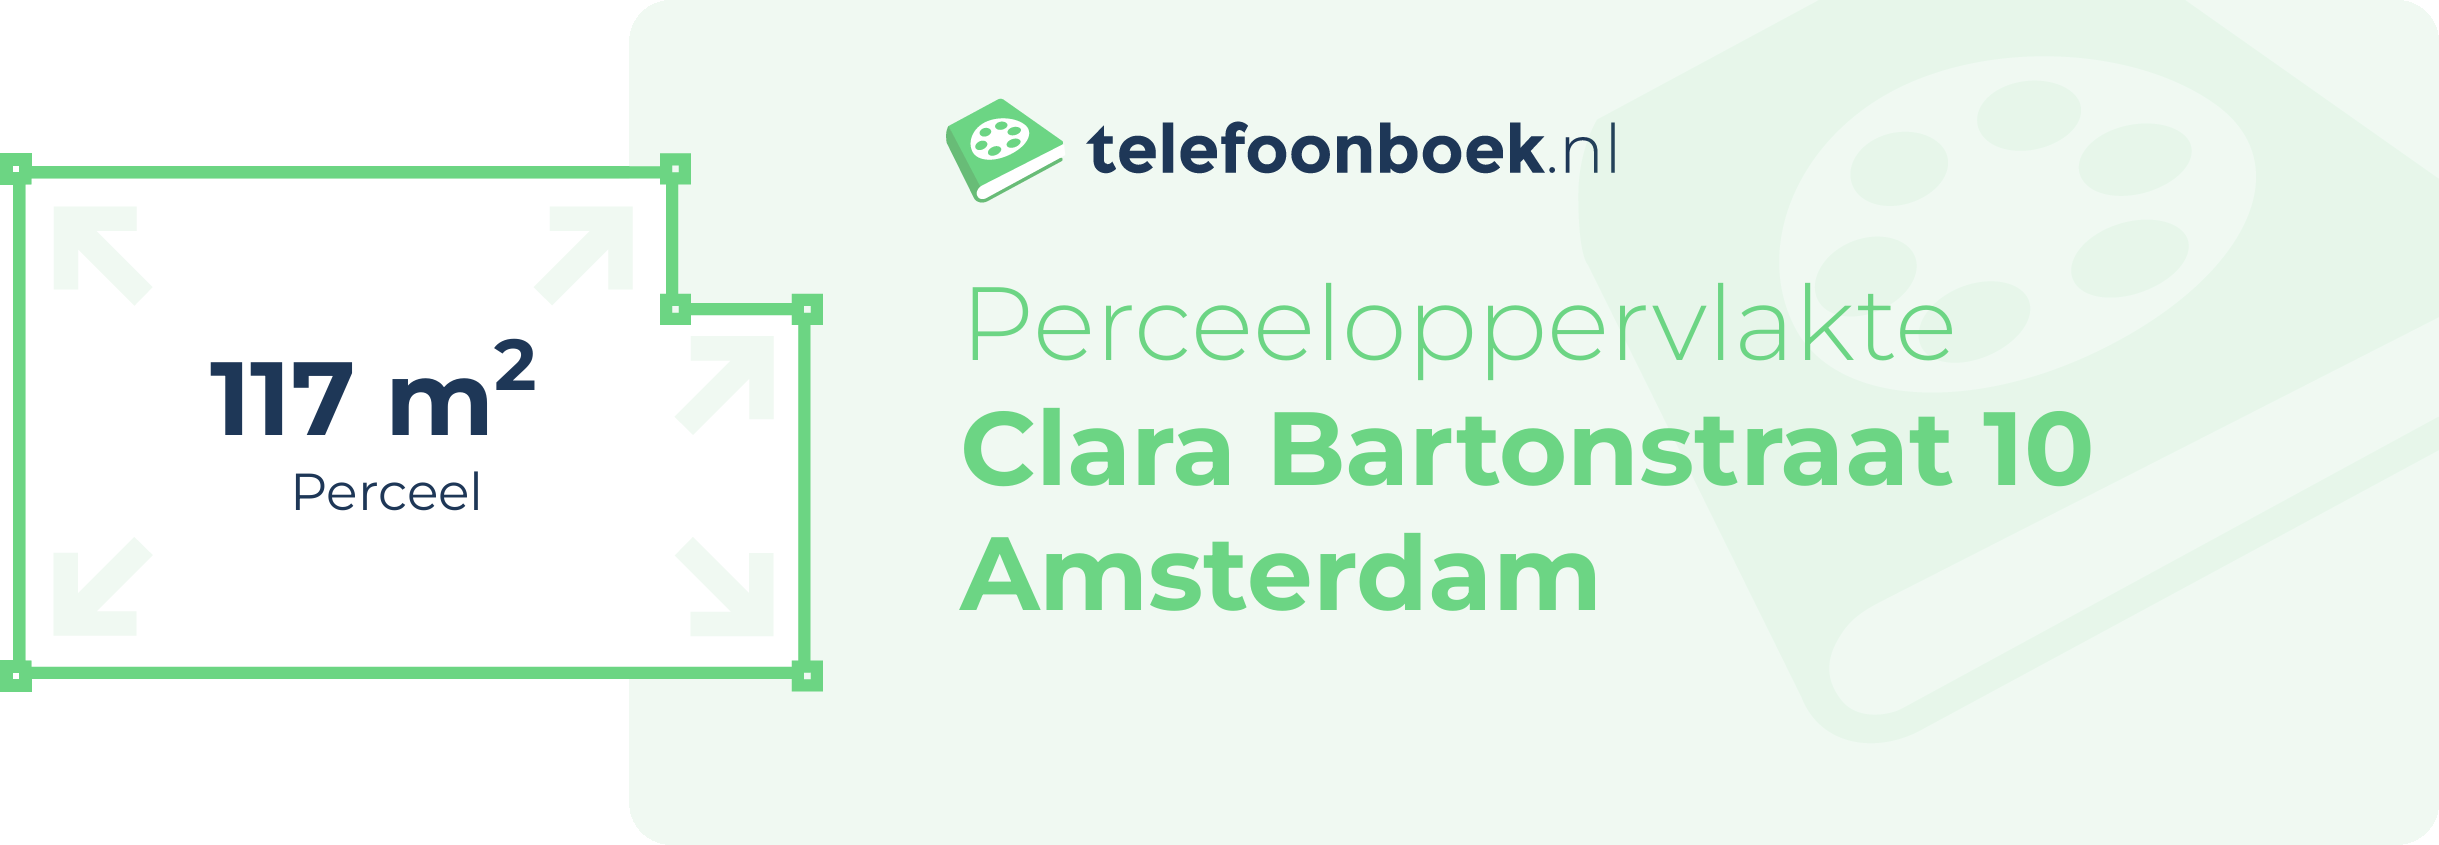 Perceeloppervlakte Clara Bartonstraat 10 Amsterdam